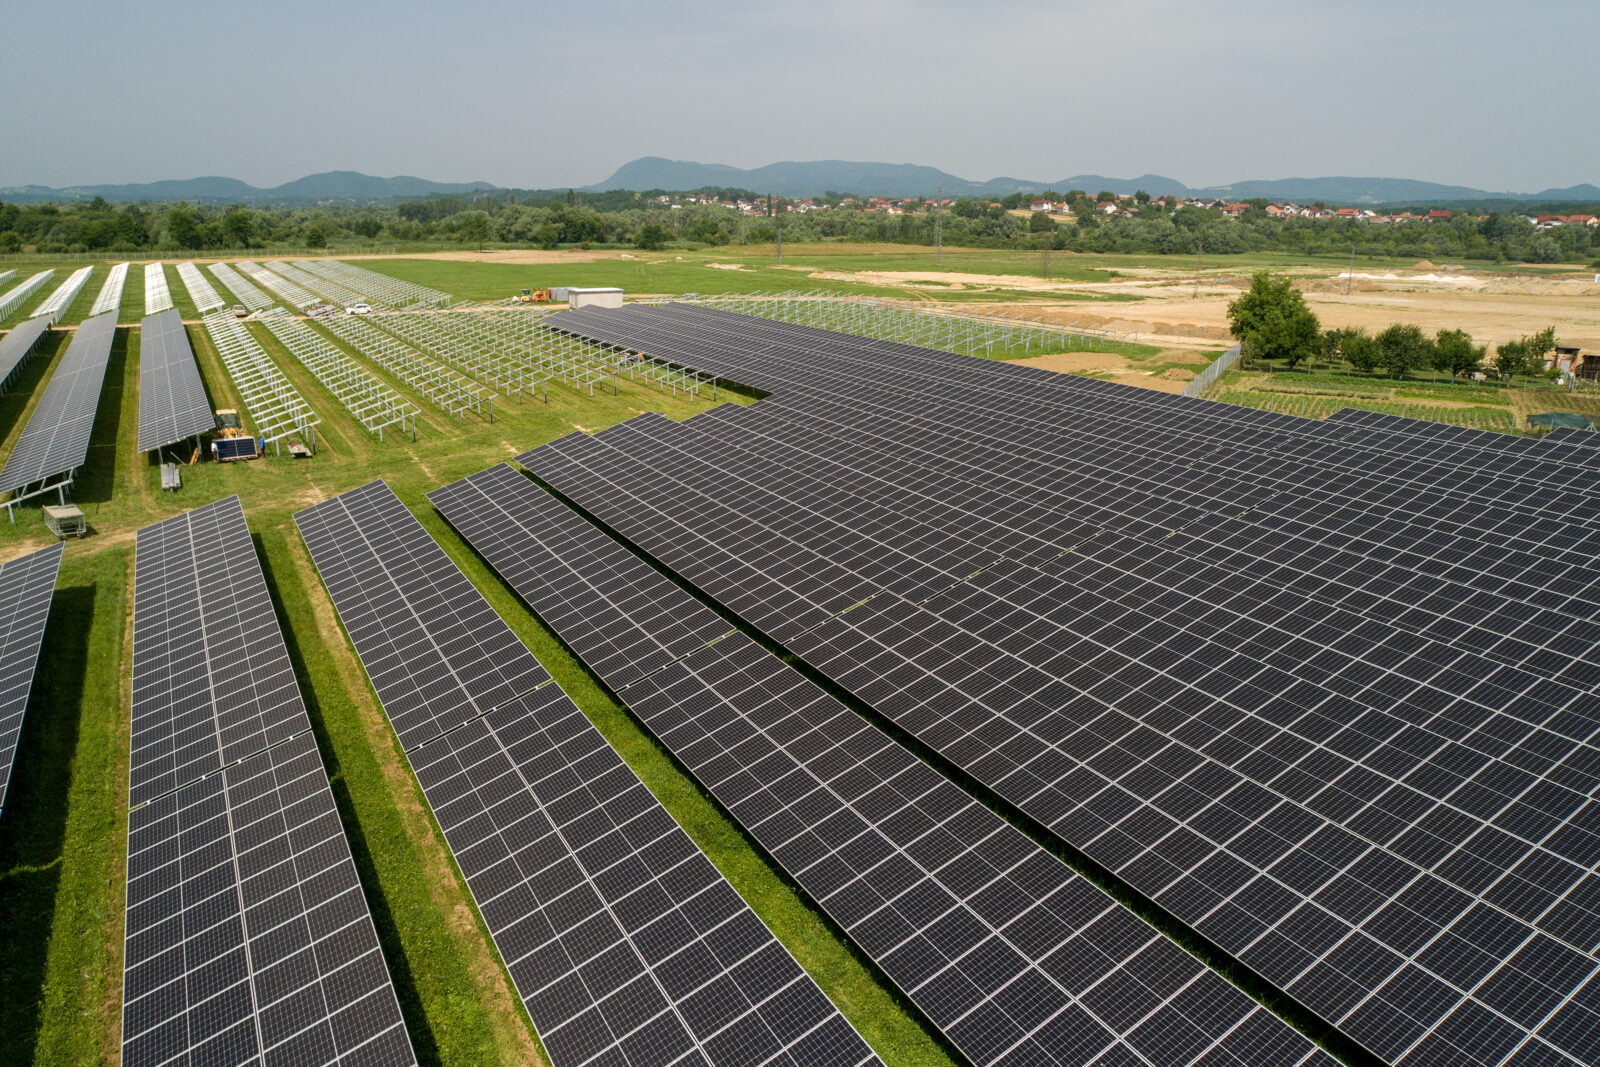 Kod Ivanca se gradi prva agrosolarna elektrana u Hrvatskoj, proizvodit će zelenu energiju i ekološku hranu